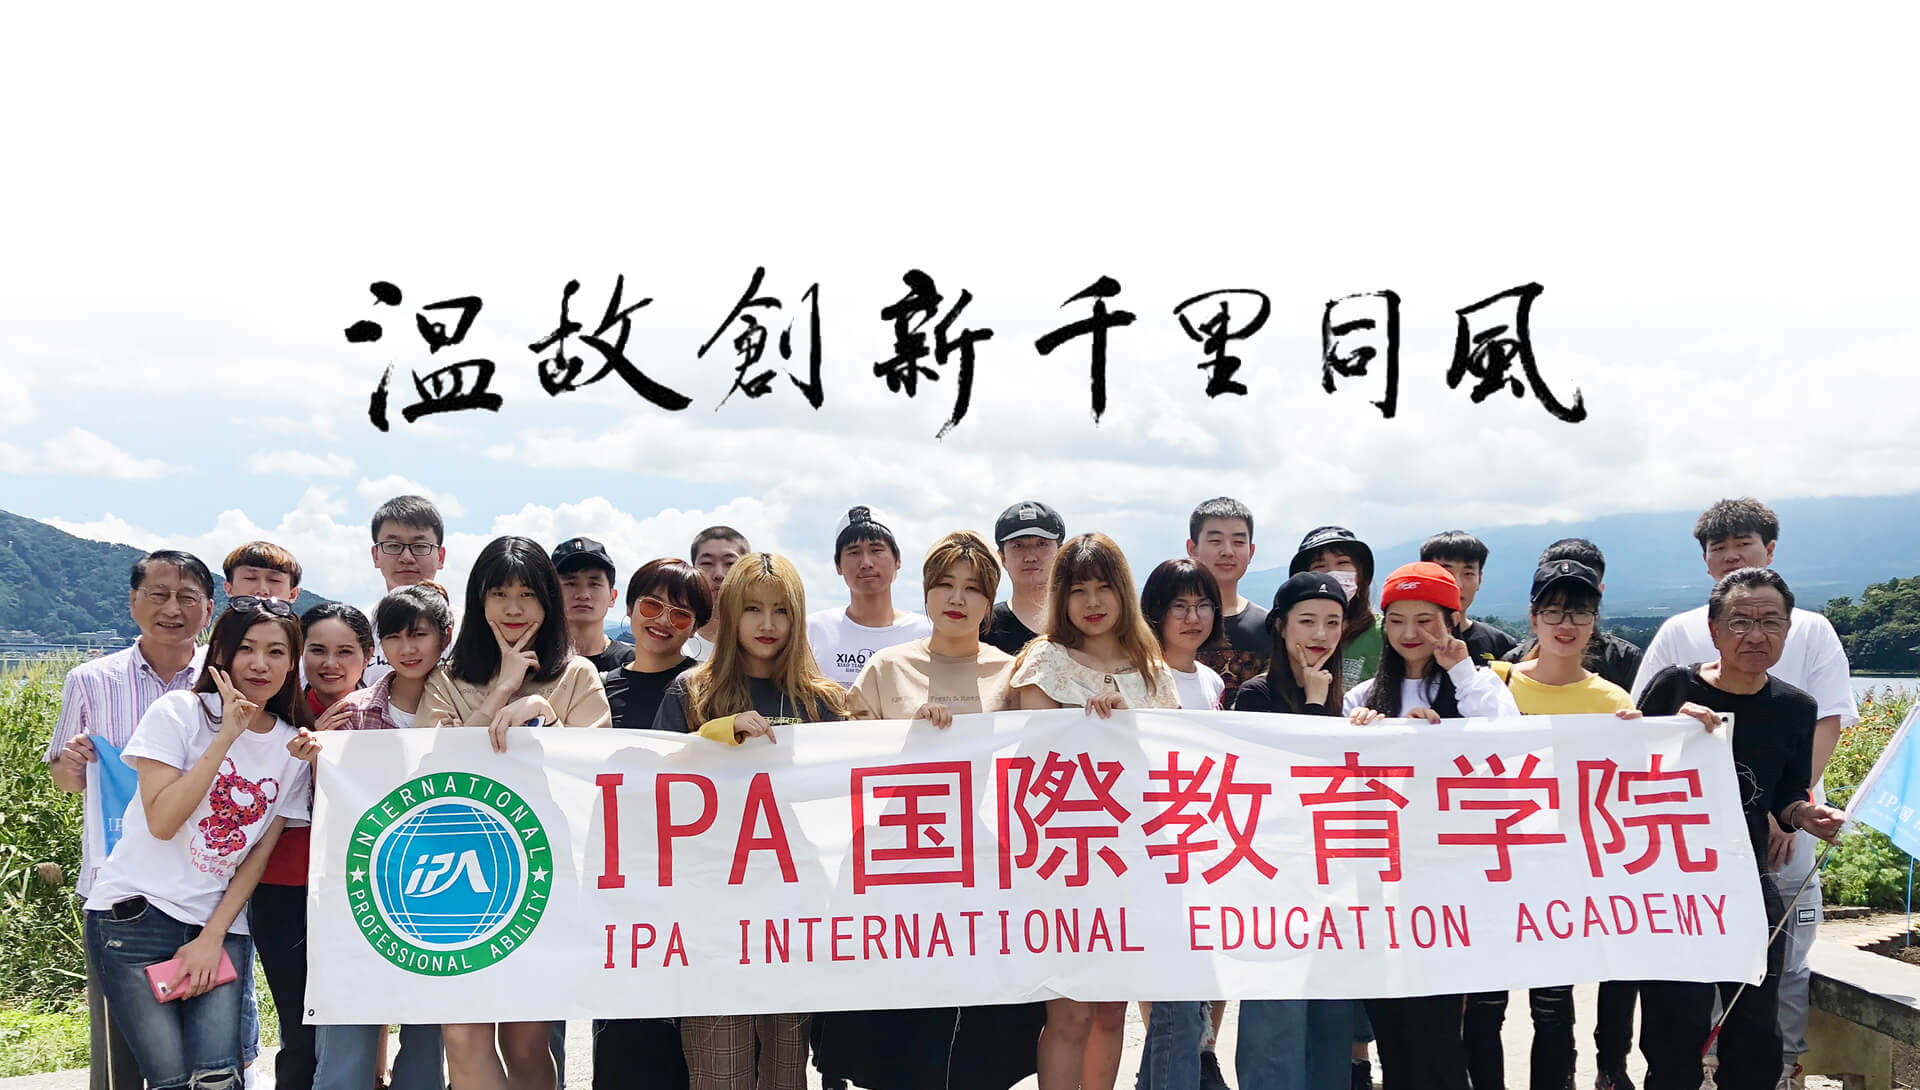 IPA国際教育学院